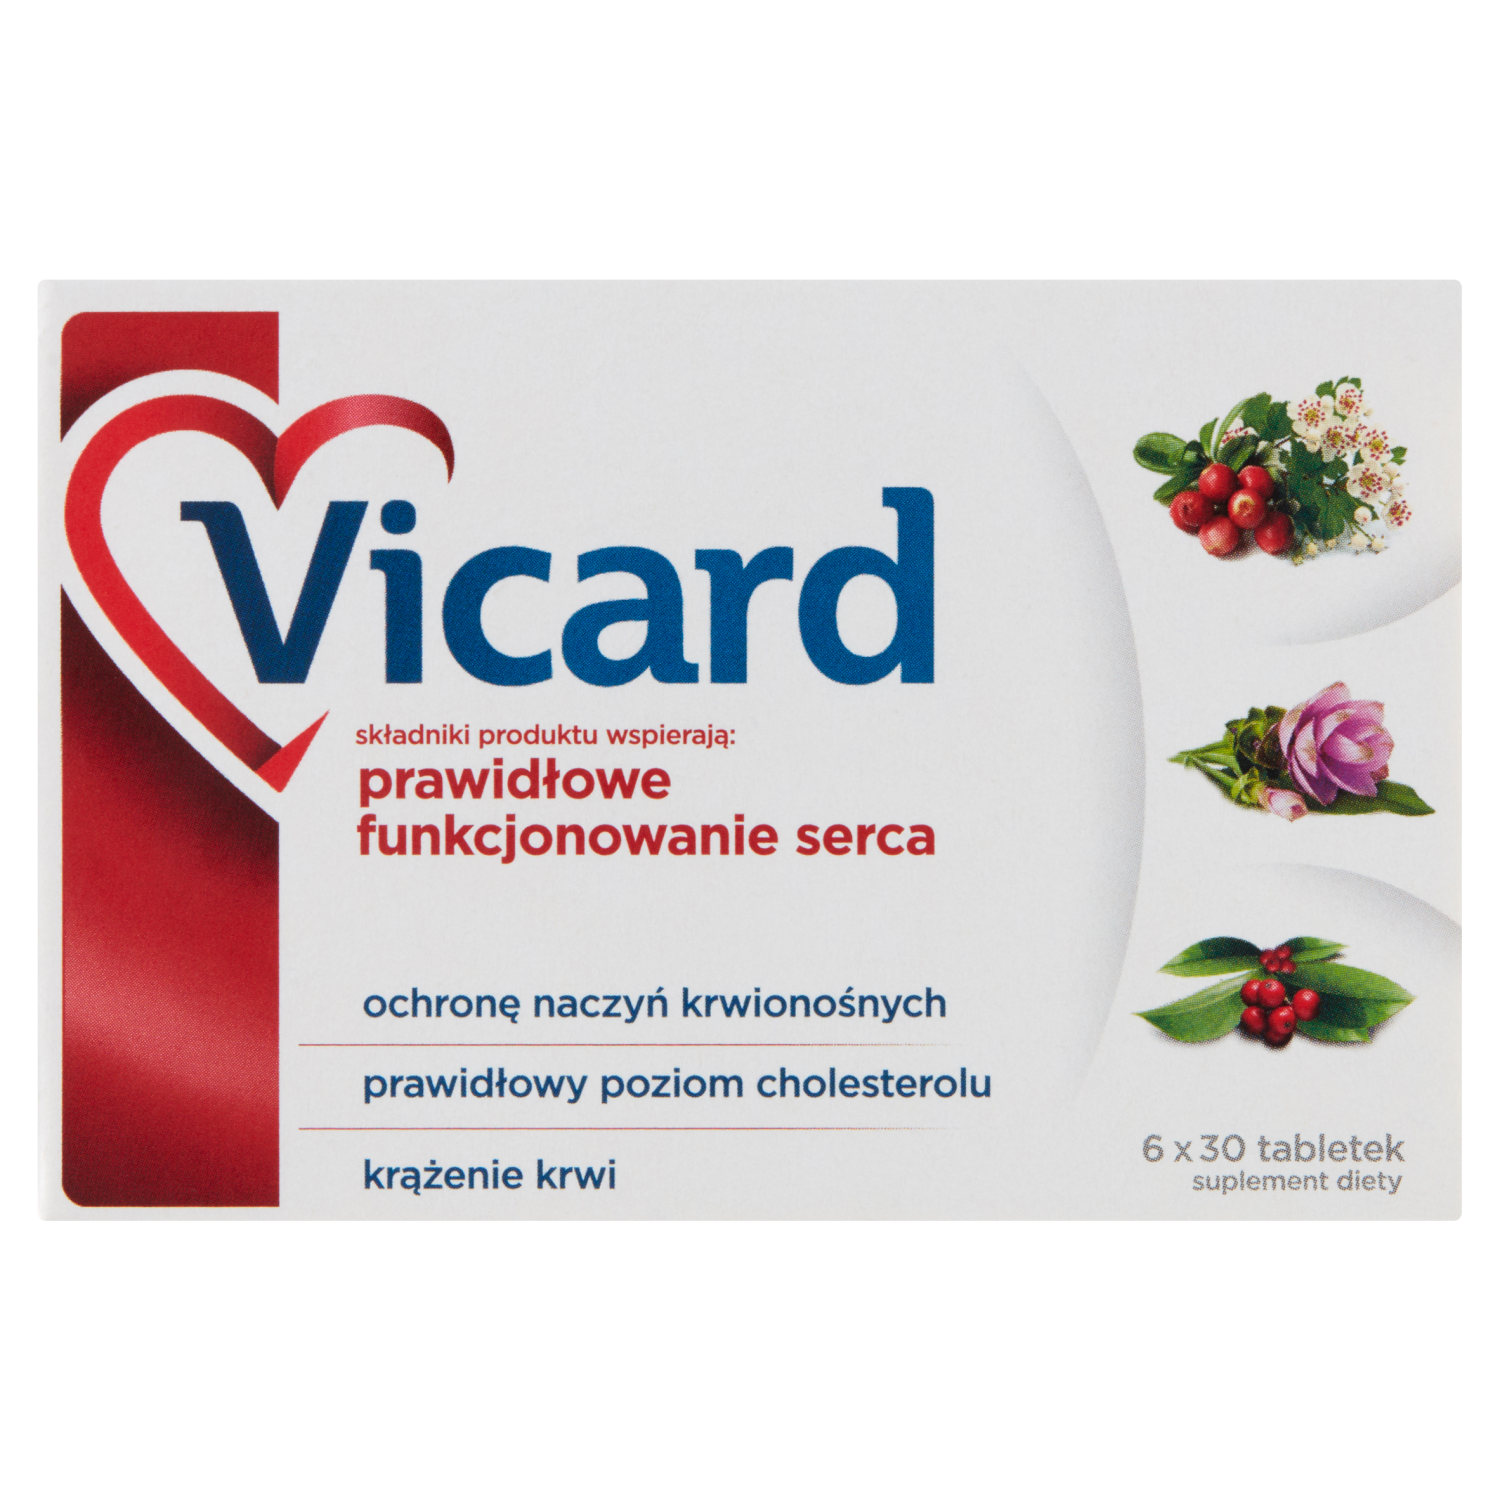 Vicard биологически активная добавка, 180 таблеток/1 упаковка